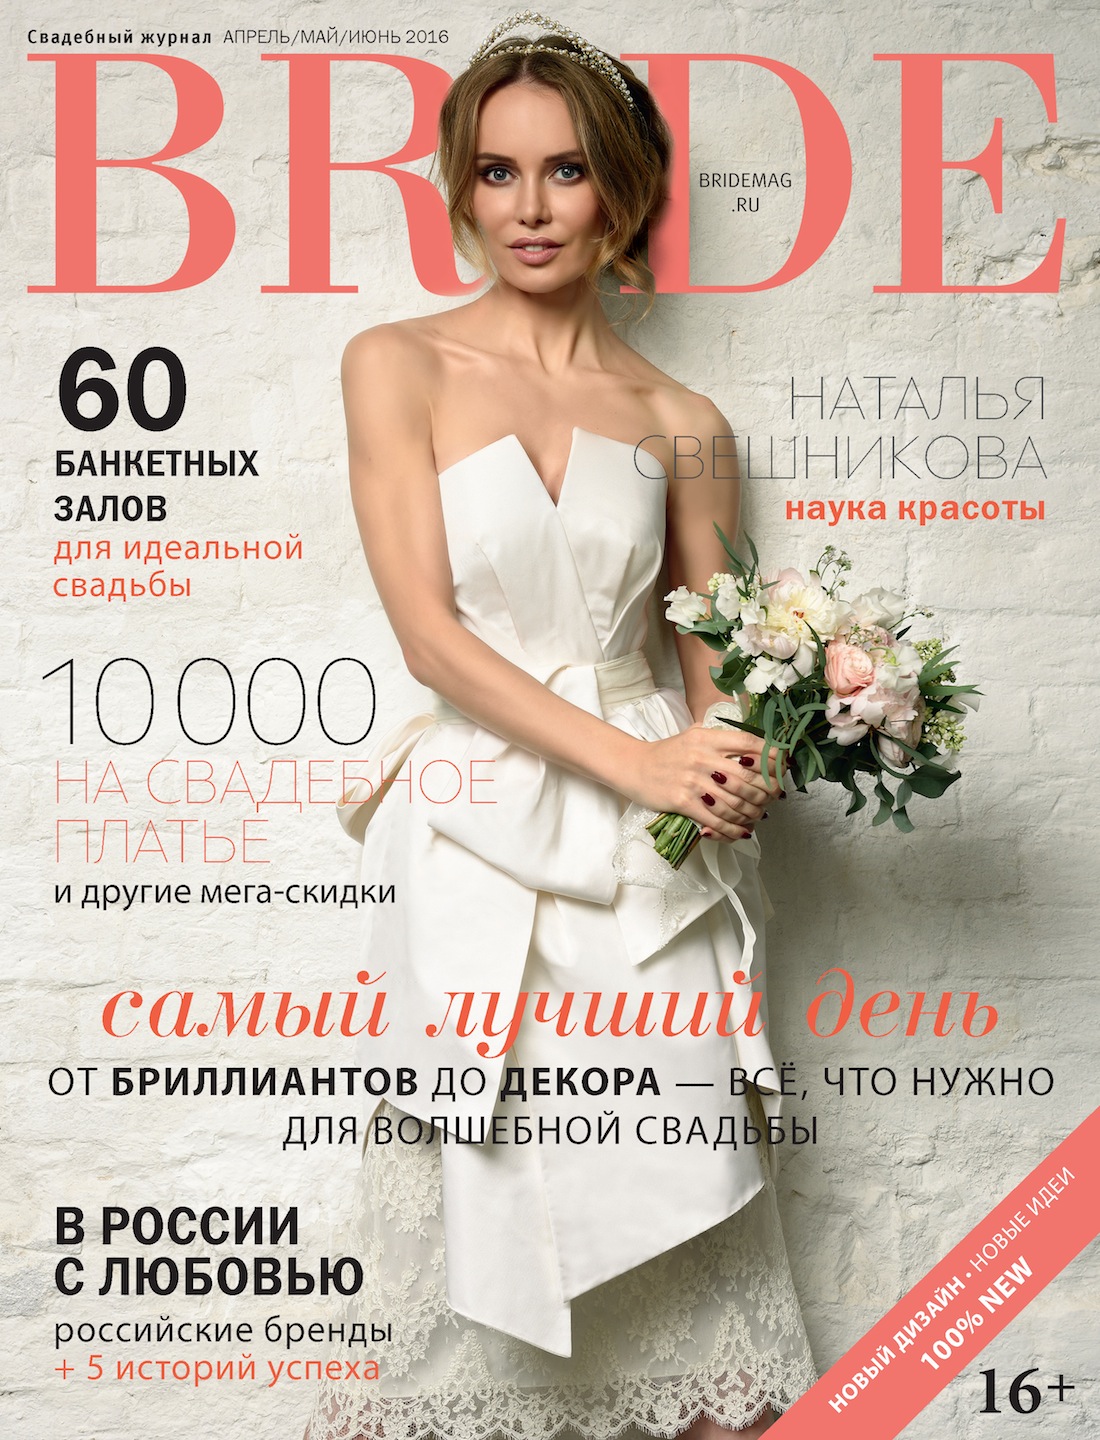 Свадебный журнал BRIDE. Апрель/май/июнь 2016